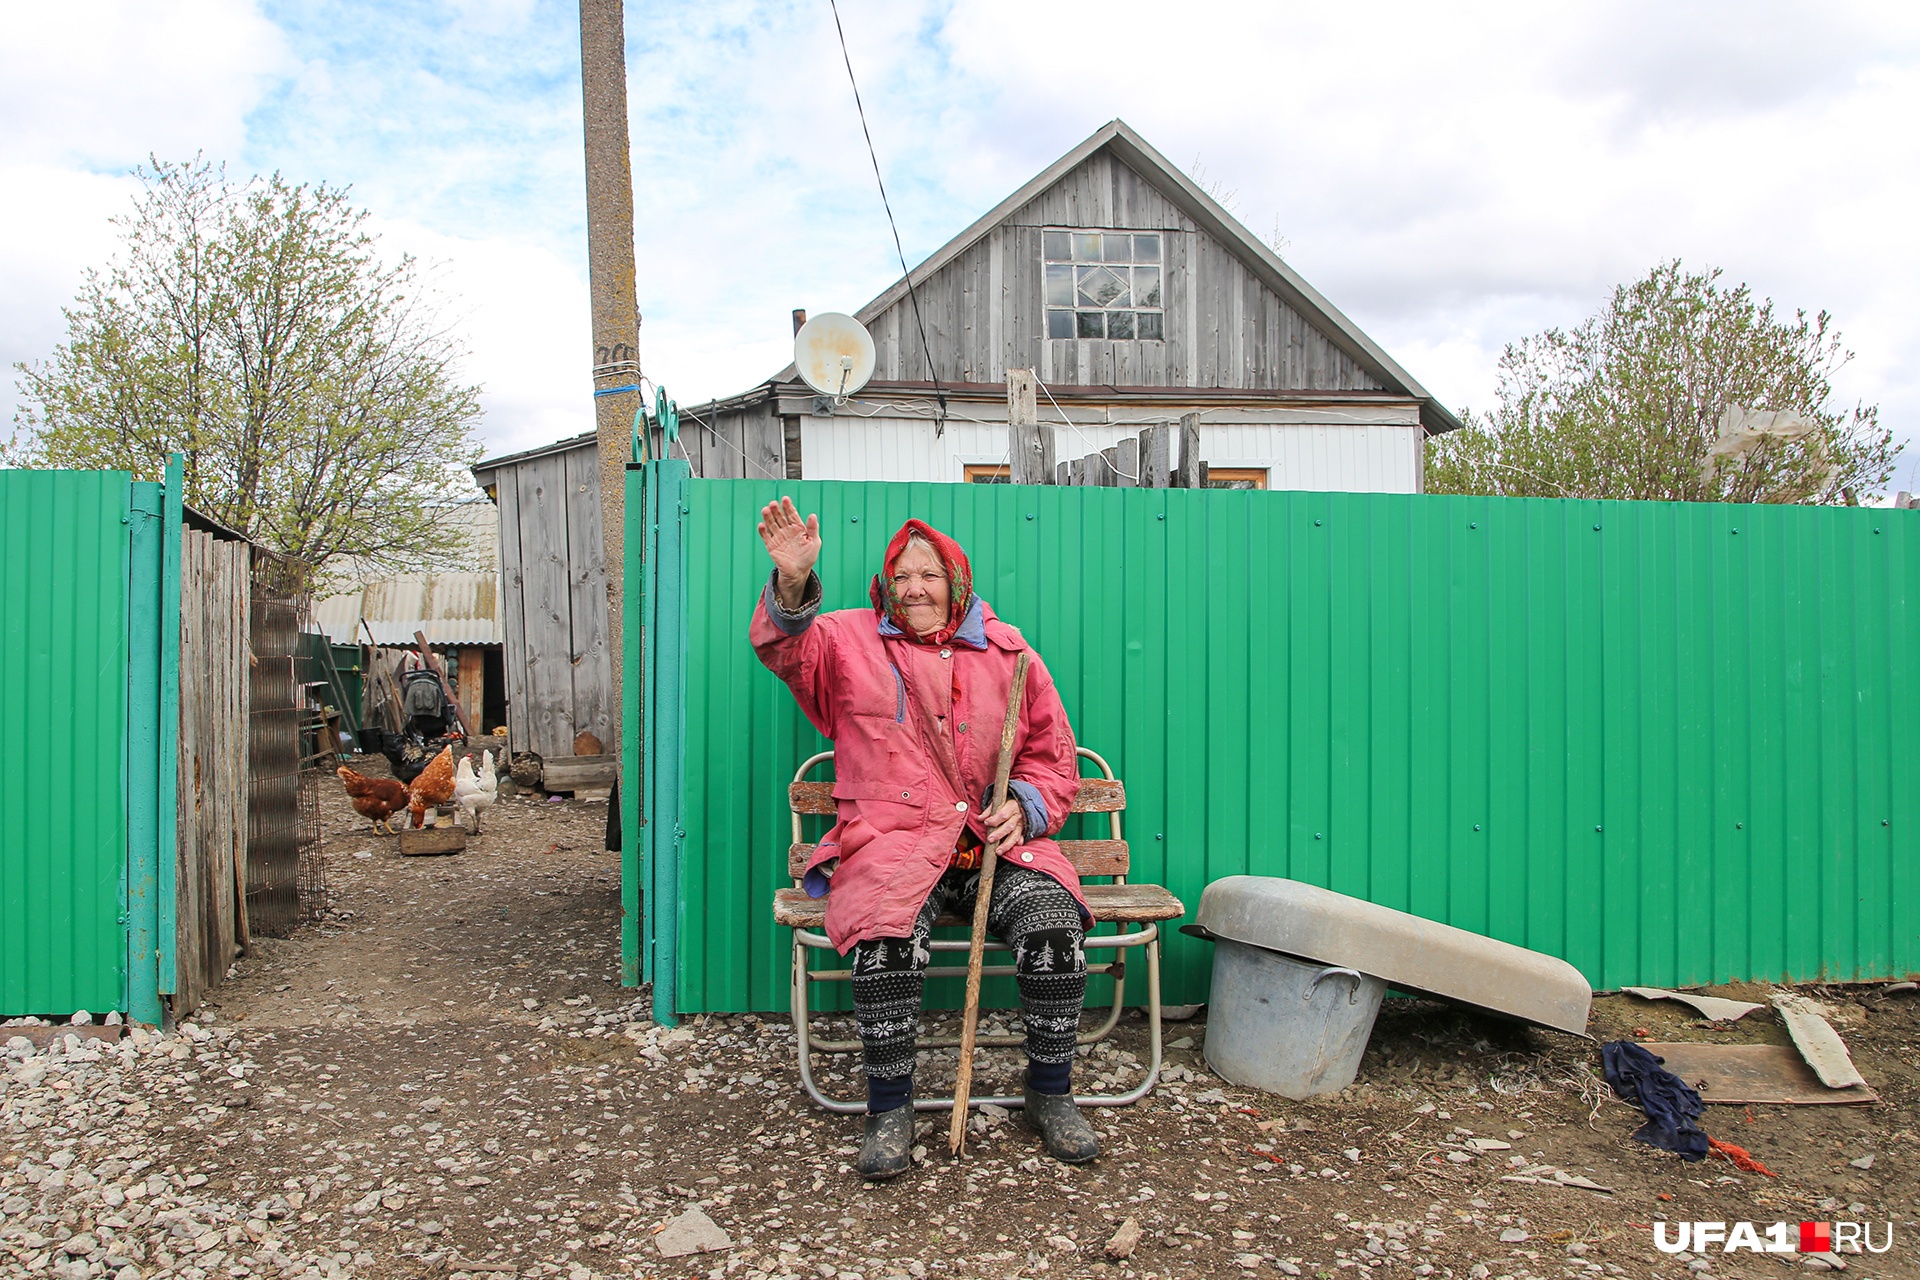 Зеленый забор Шерстобитовых — самый модный на деревне